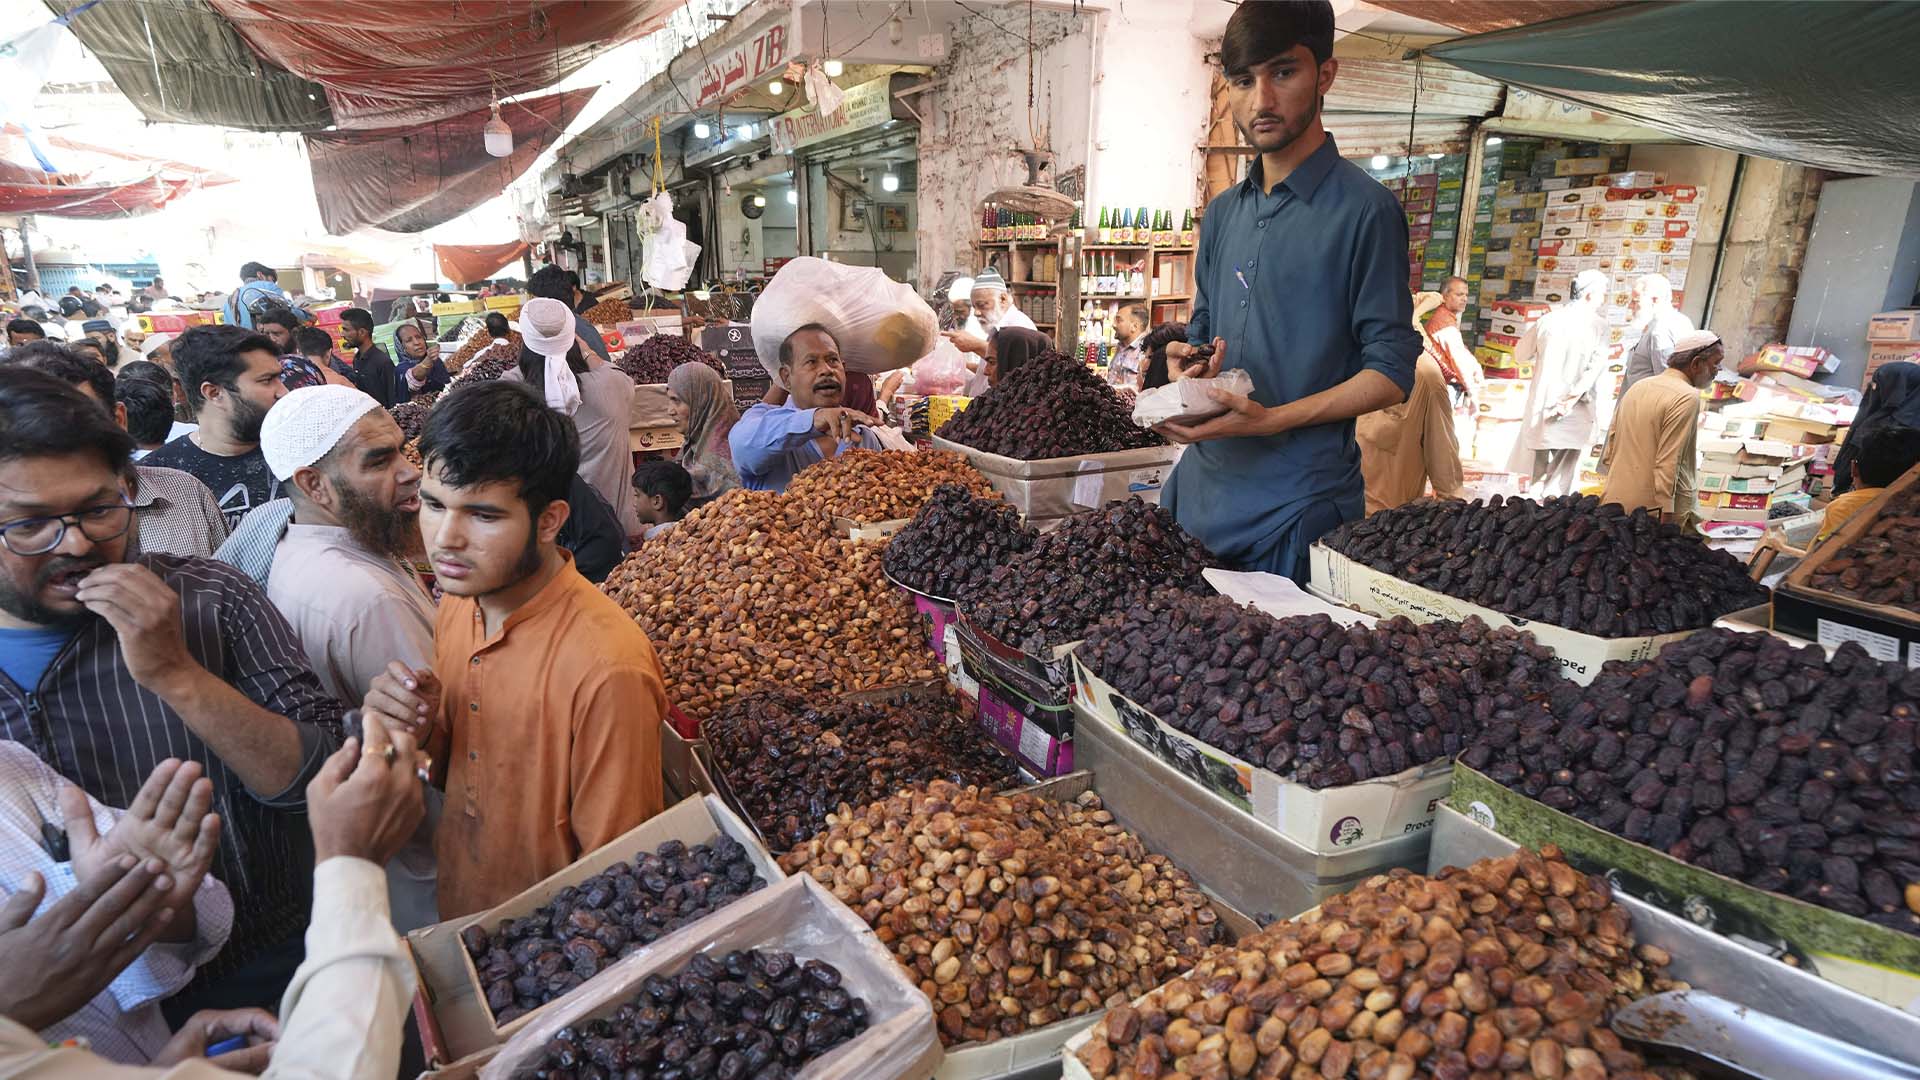 Les gens visitent un marché pour acheter des dattes et d'autres articles avant le prochain mois de jeûne musulman du Ramadan, à Karachi, au Pakistan, le mardi 21 mars 2023.